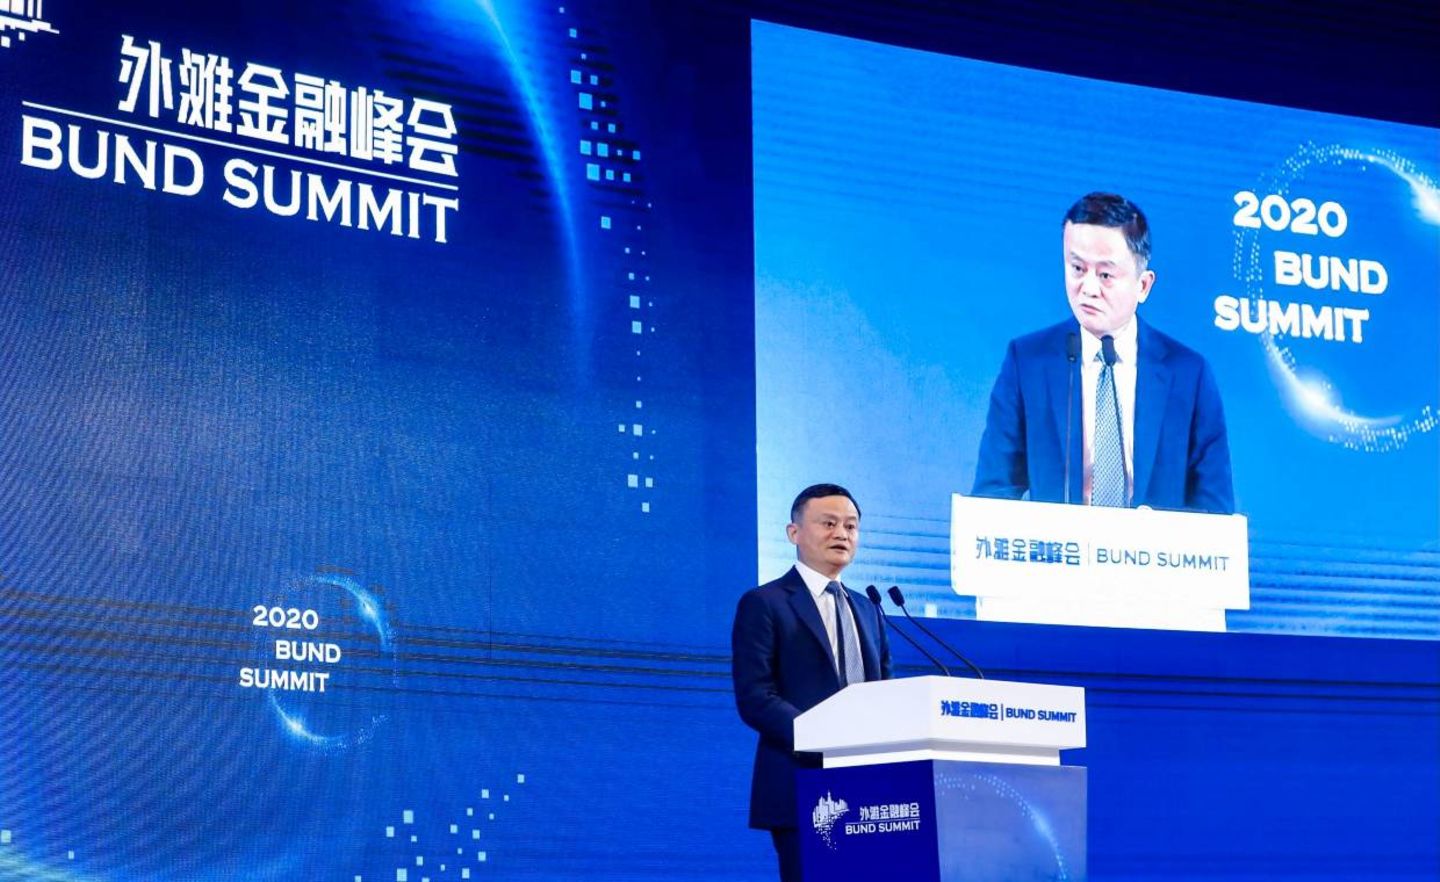 In seiner Rede beim Bund-Summit im Oktober 2020 kritisierte Jack Ma das chinesische Finanzsystem scharf